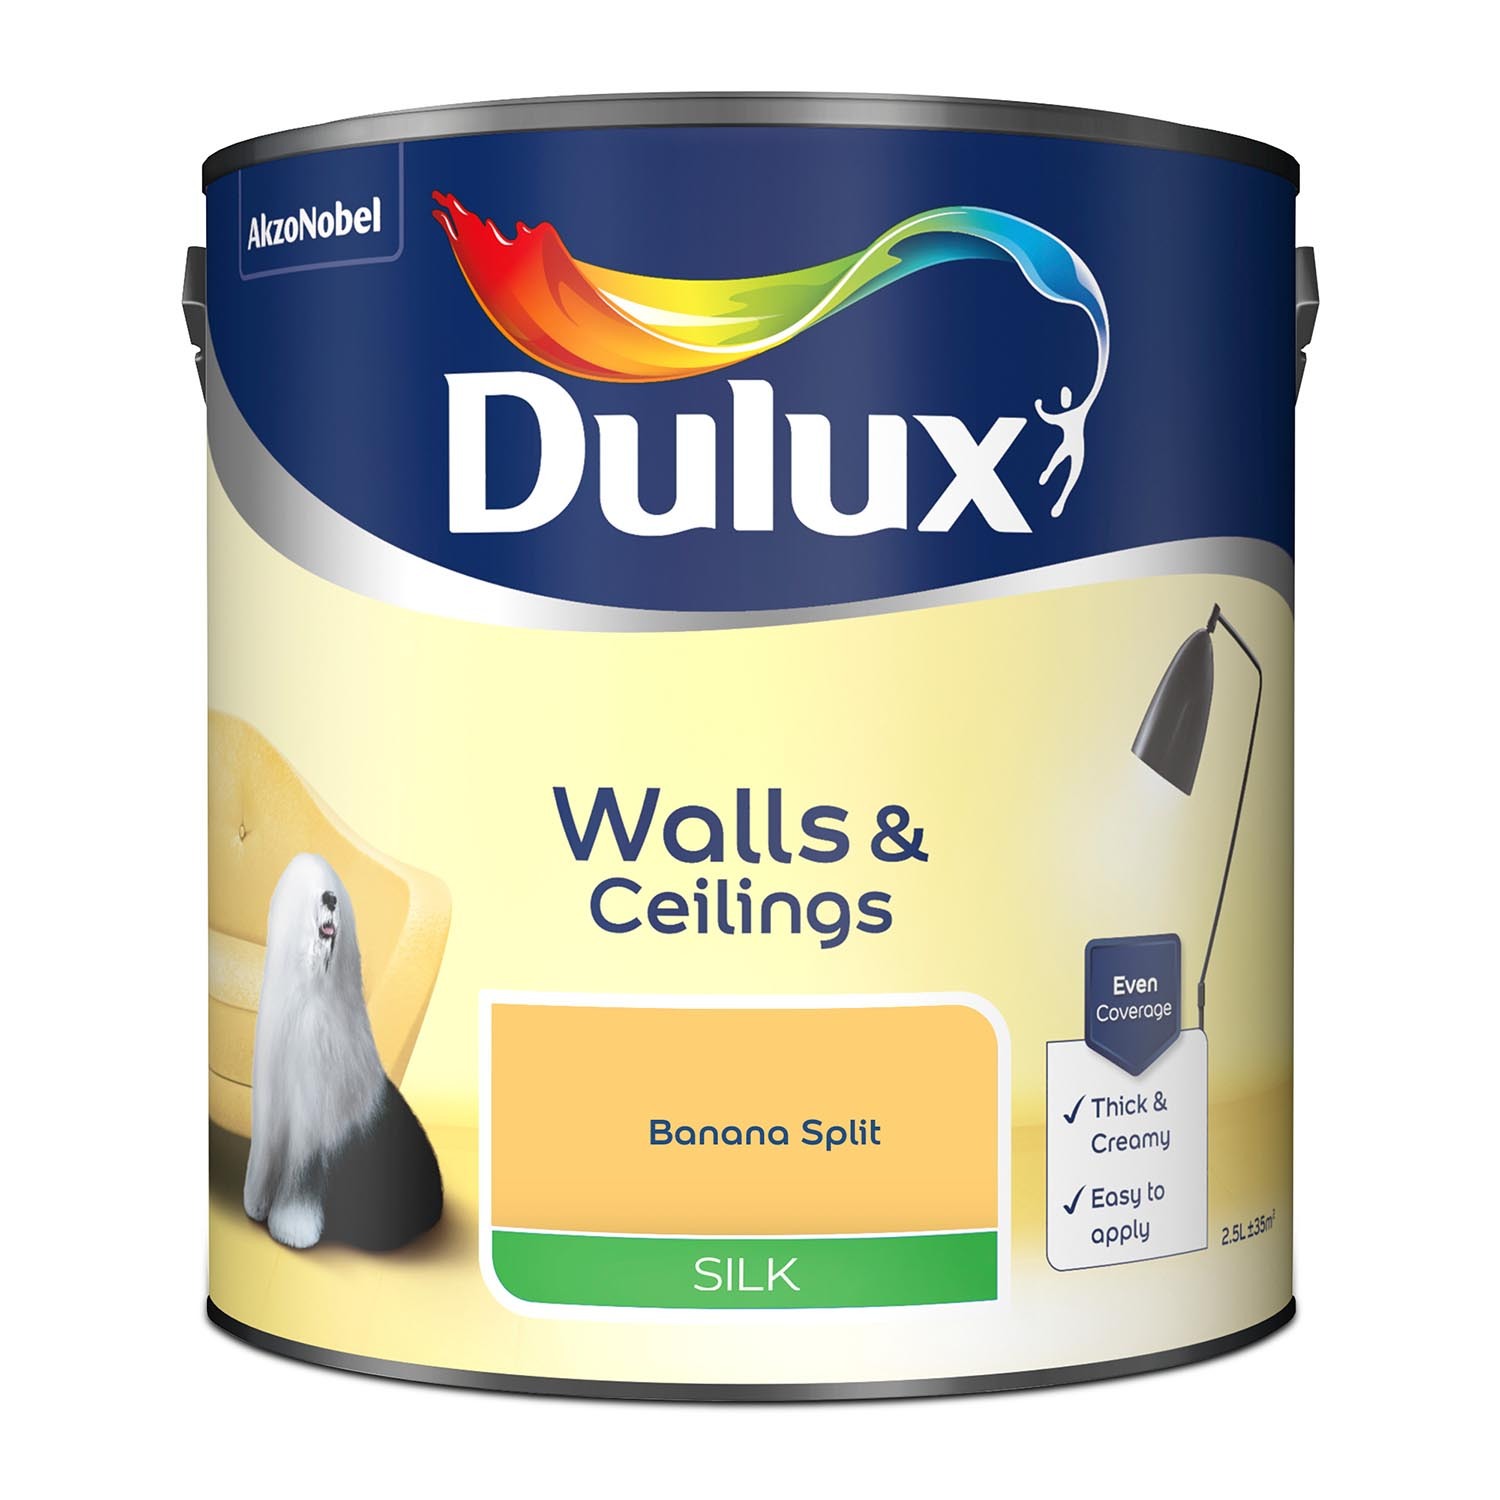 Dulux Walls & Ceilings Banana Split Silk Emulsion Paint 2.5L Image 3